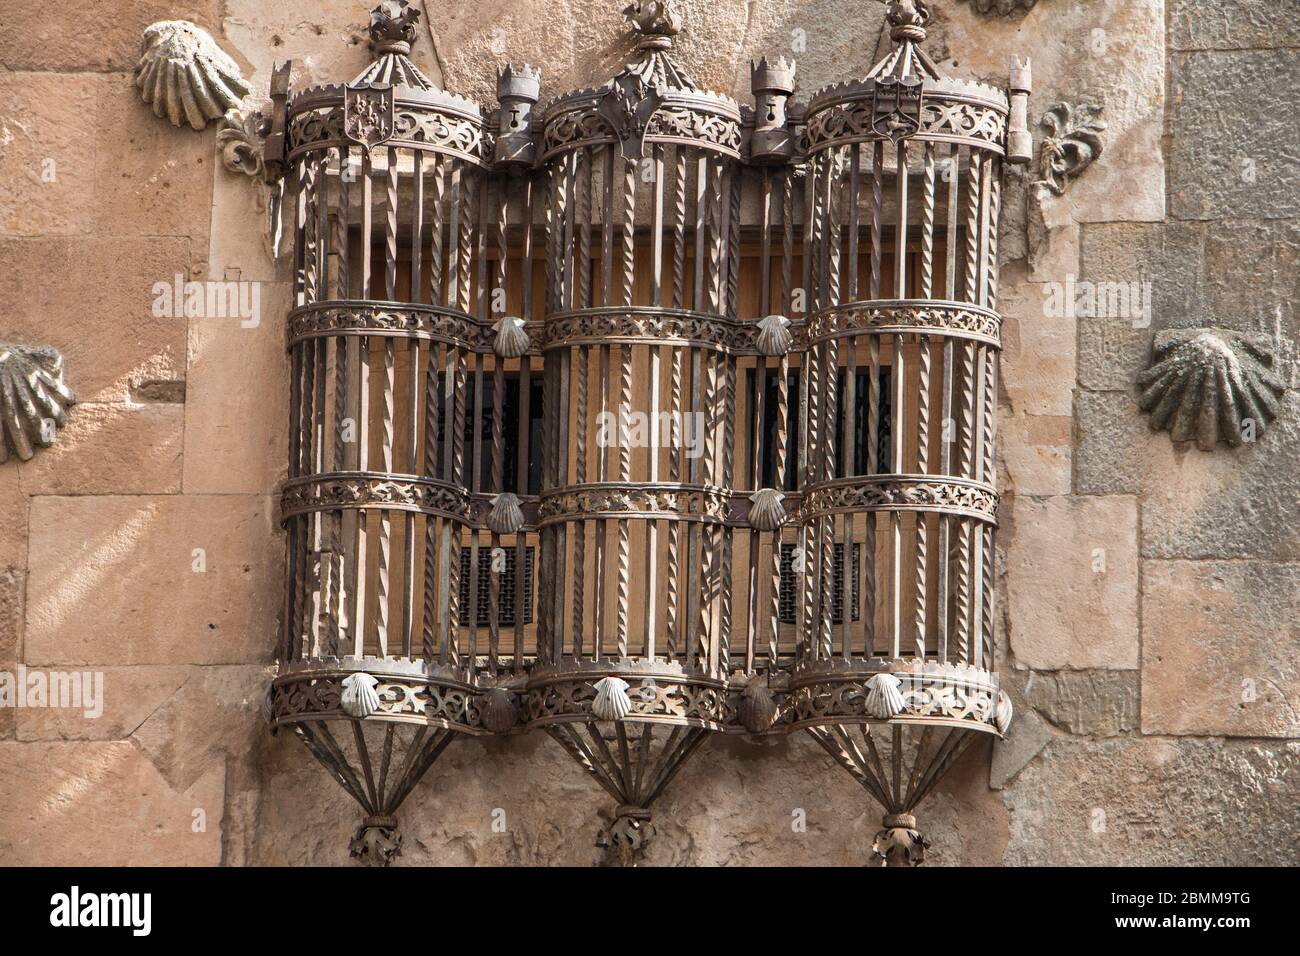 Grille de rideau de fer ornée, Casa de Las Conchas, Salamanque Espagne Banque D'Images